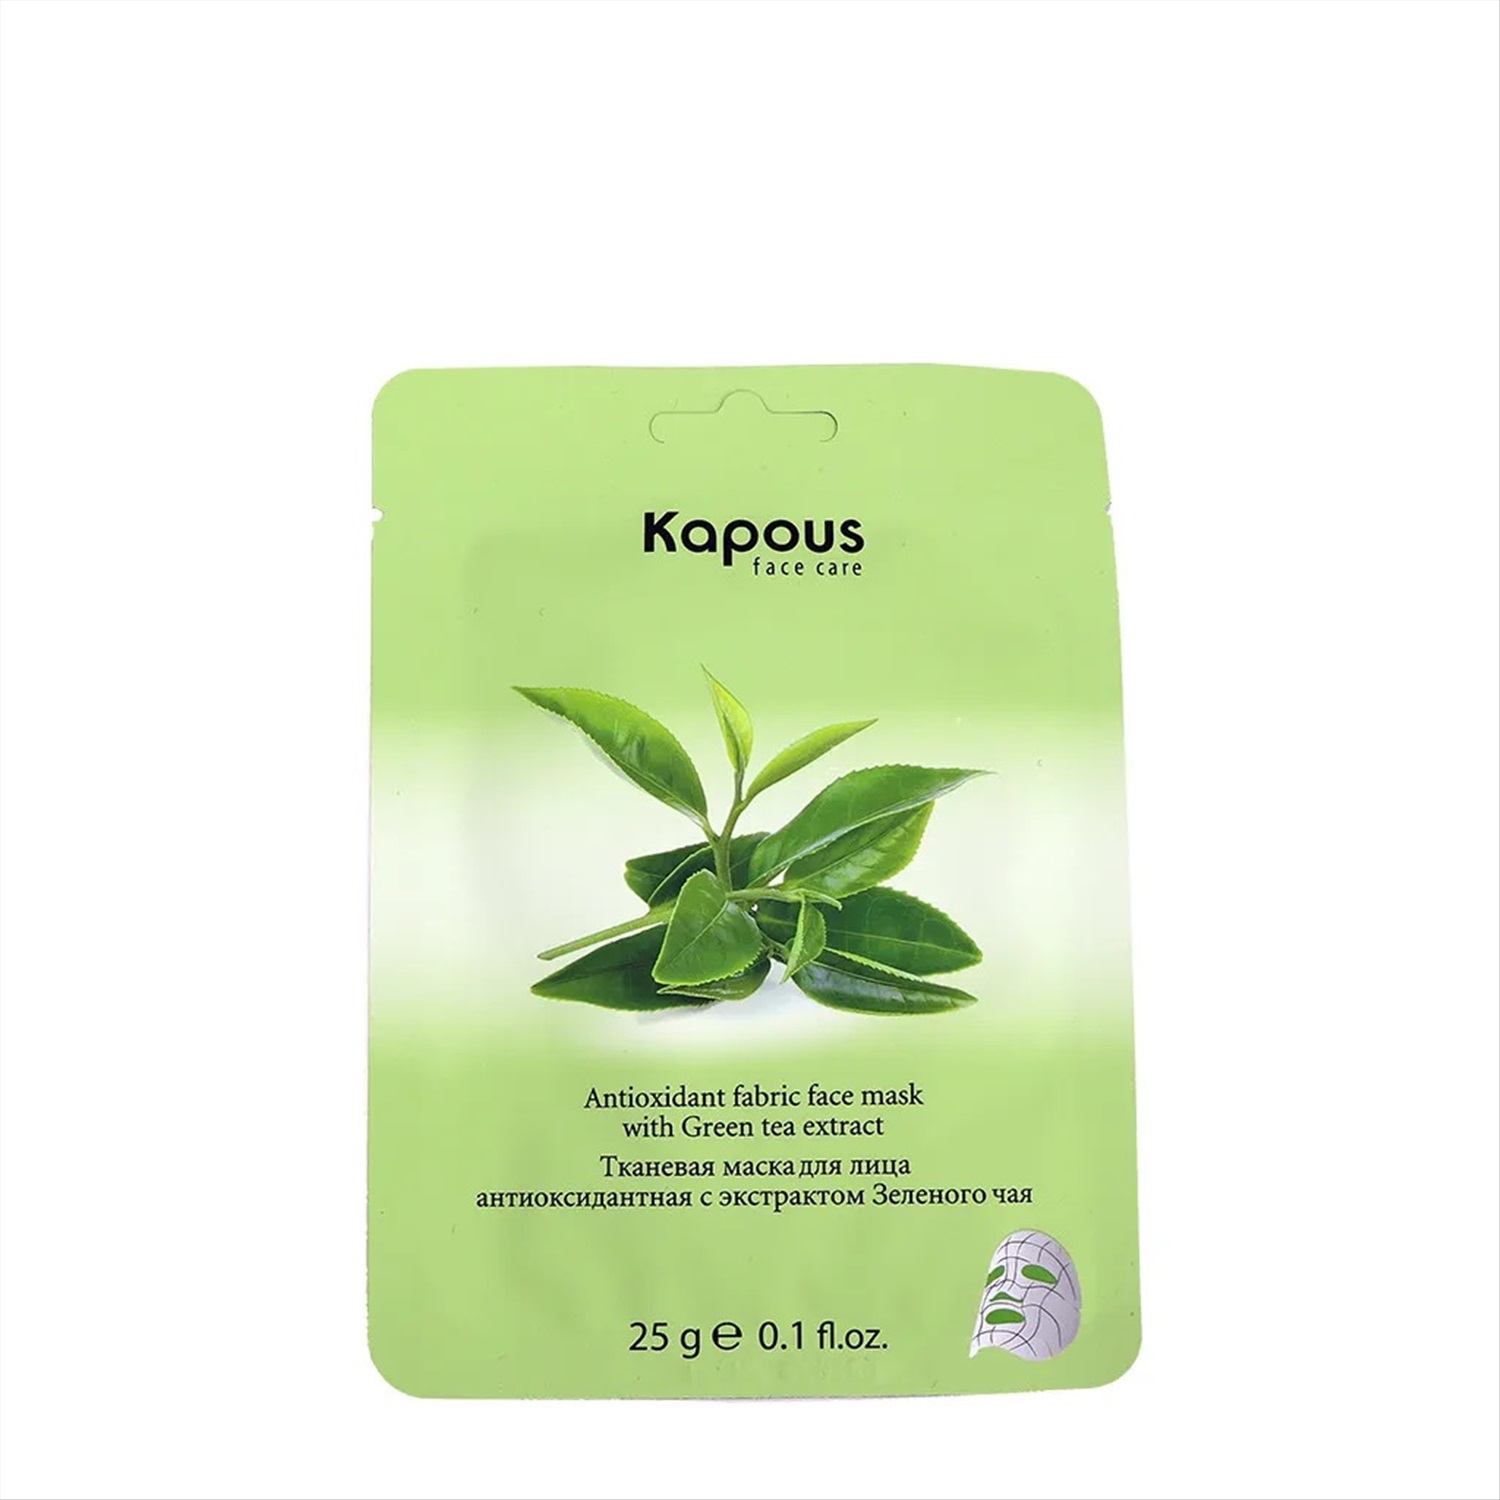 Тканевые маски защищают. Kapous маска тканевая для лица антиоксидантная зеленый чай 25 гр. Тканевая маска для лица Kapous, 25 г. Nonj Mud маска для лица тканевая зеленый чай-ил 25г. Kapous маска тканевая для лица успок. Алоэ 25 гр.